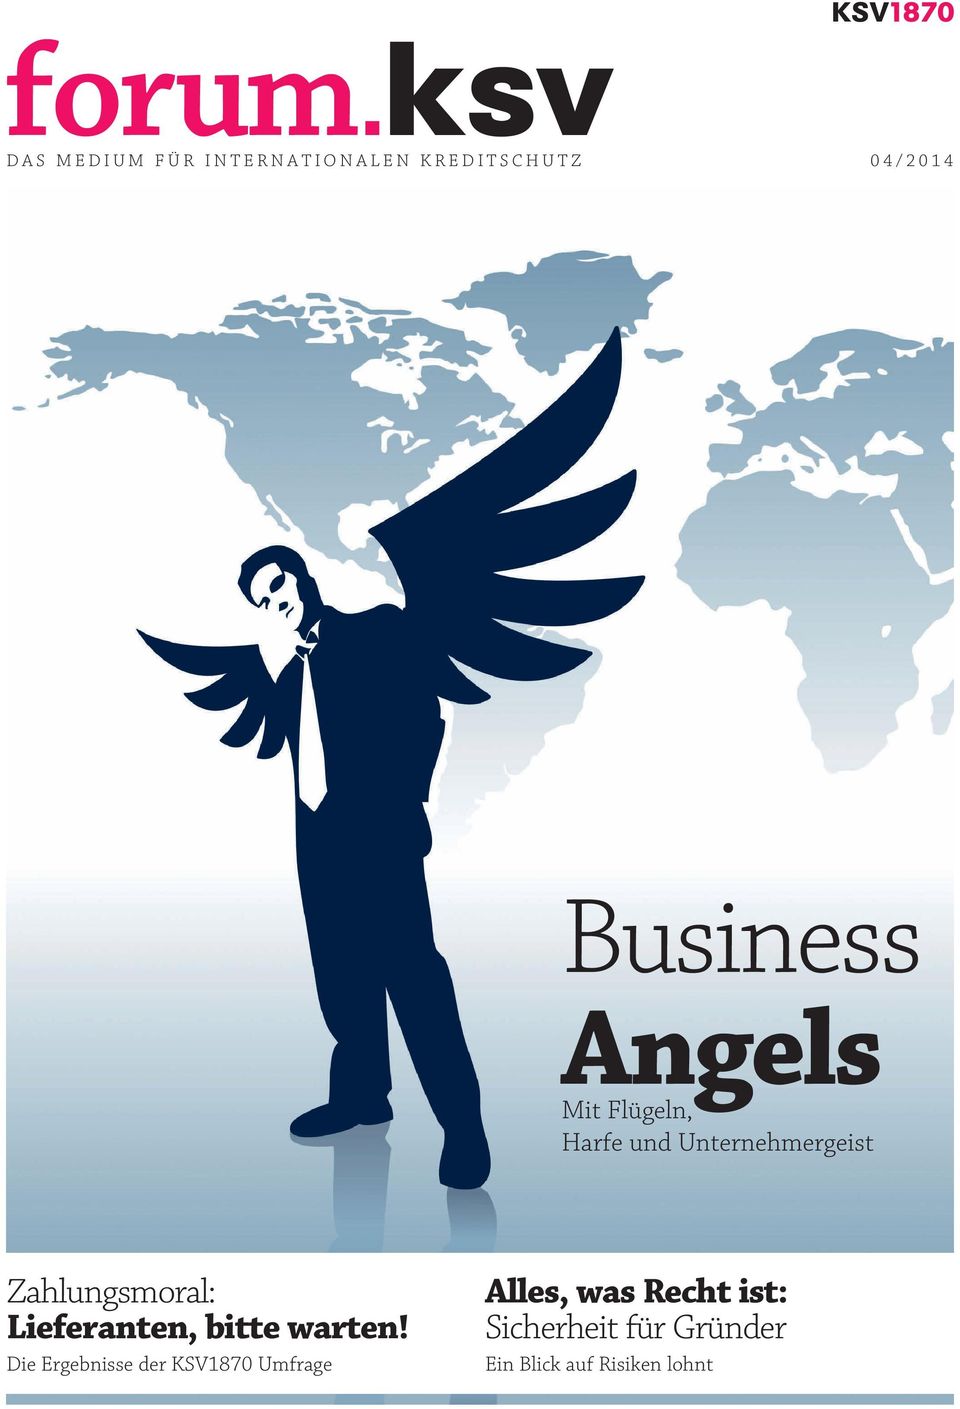 Angels Mit Flügeln, Harfe und Unternehmergeist Zahlungsmoral: